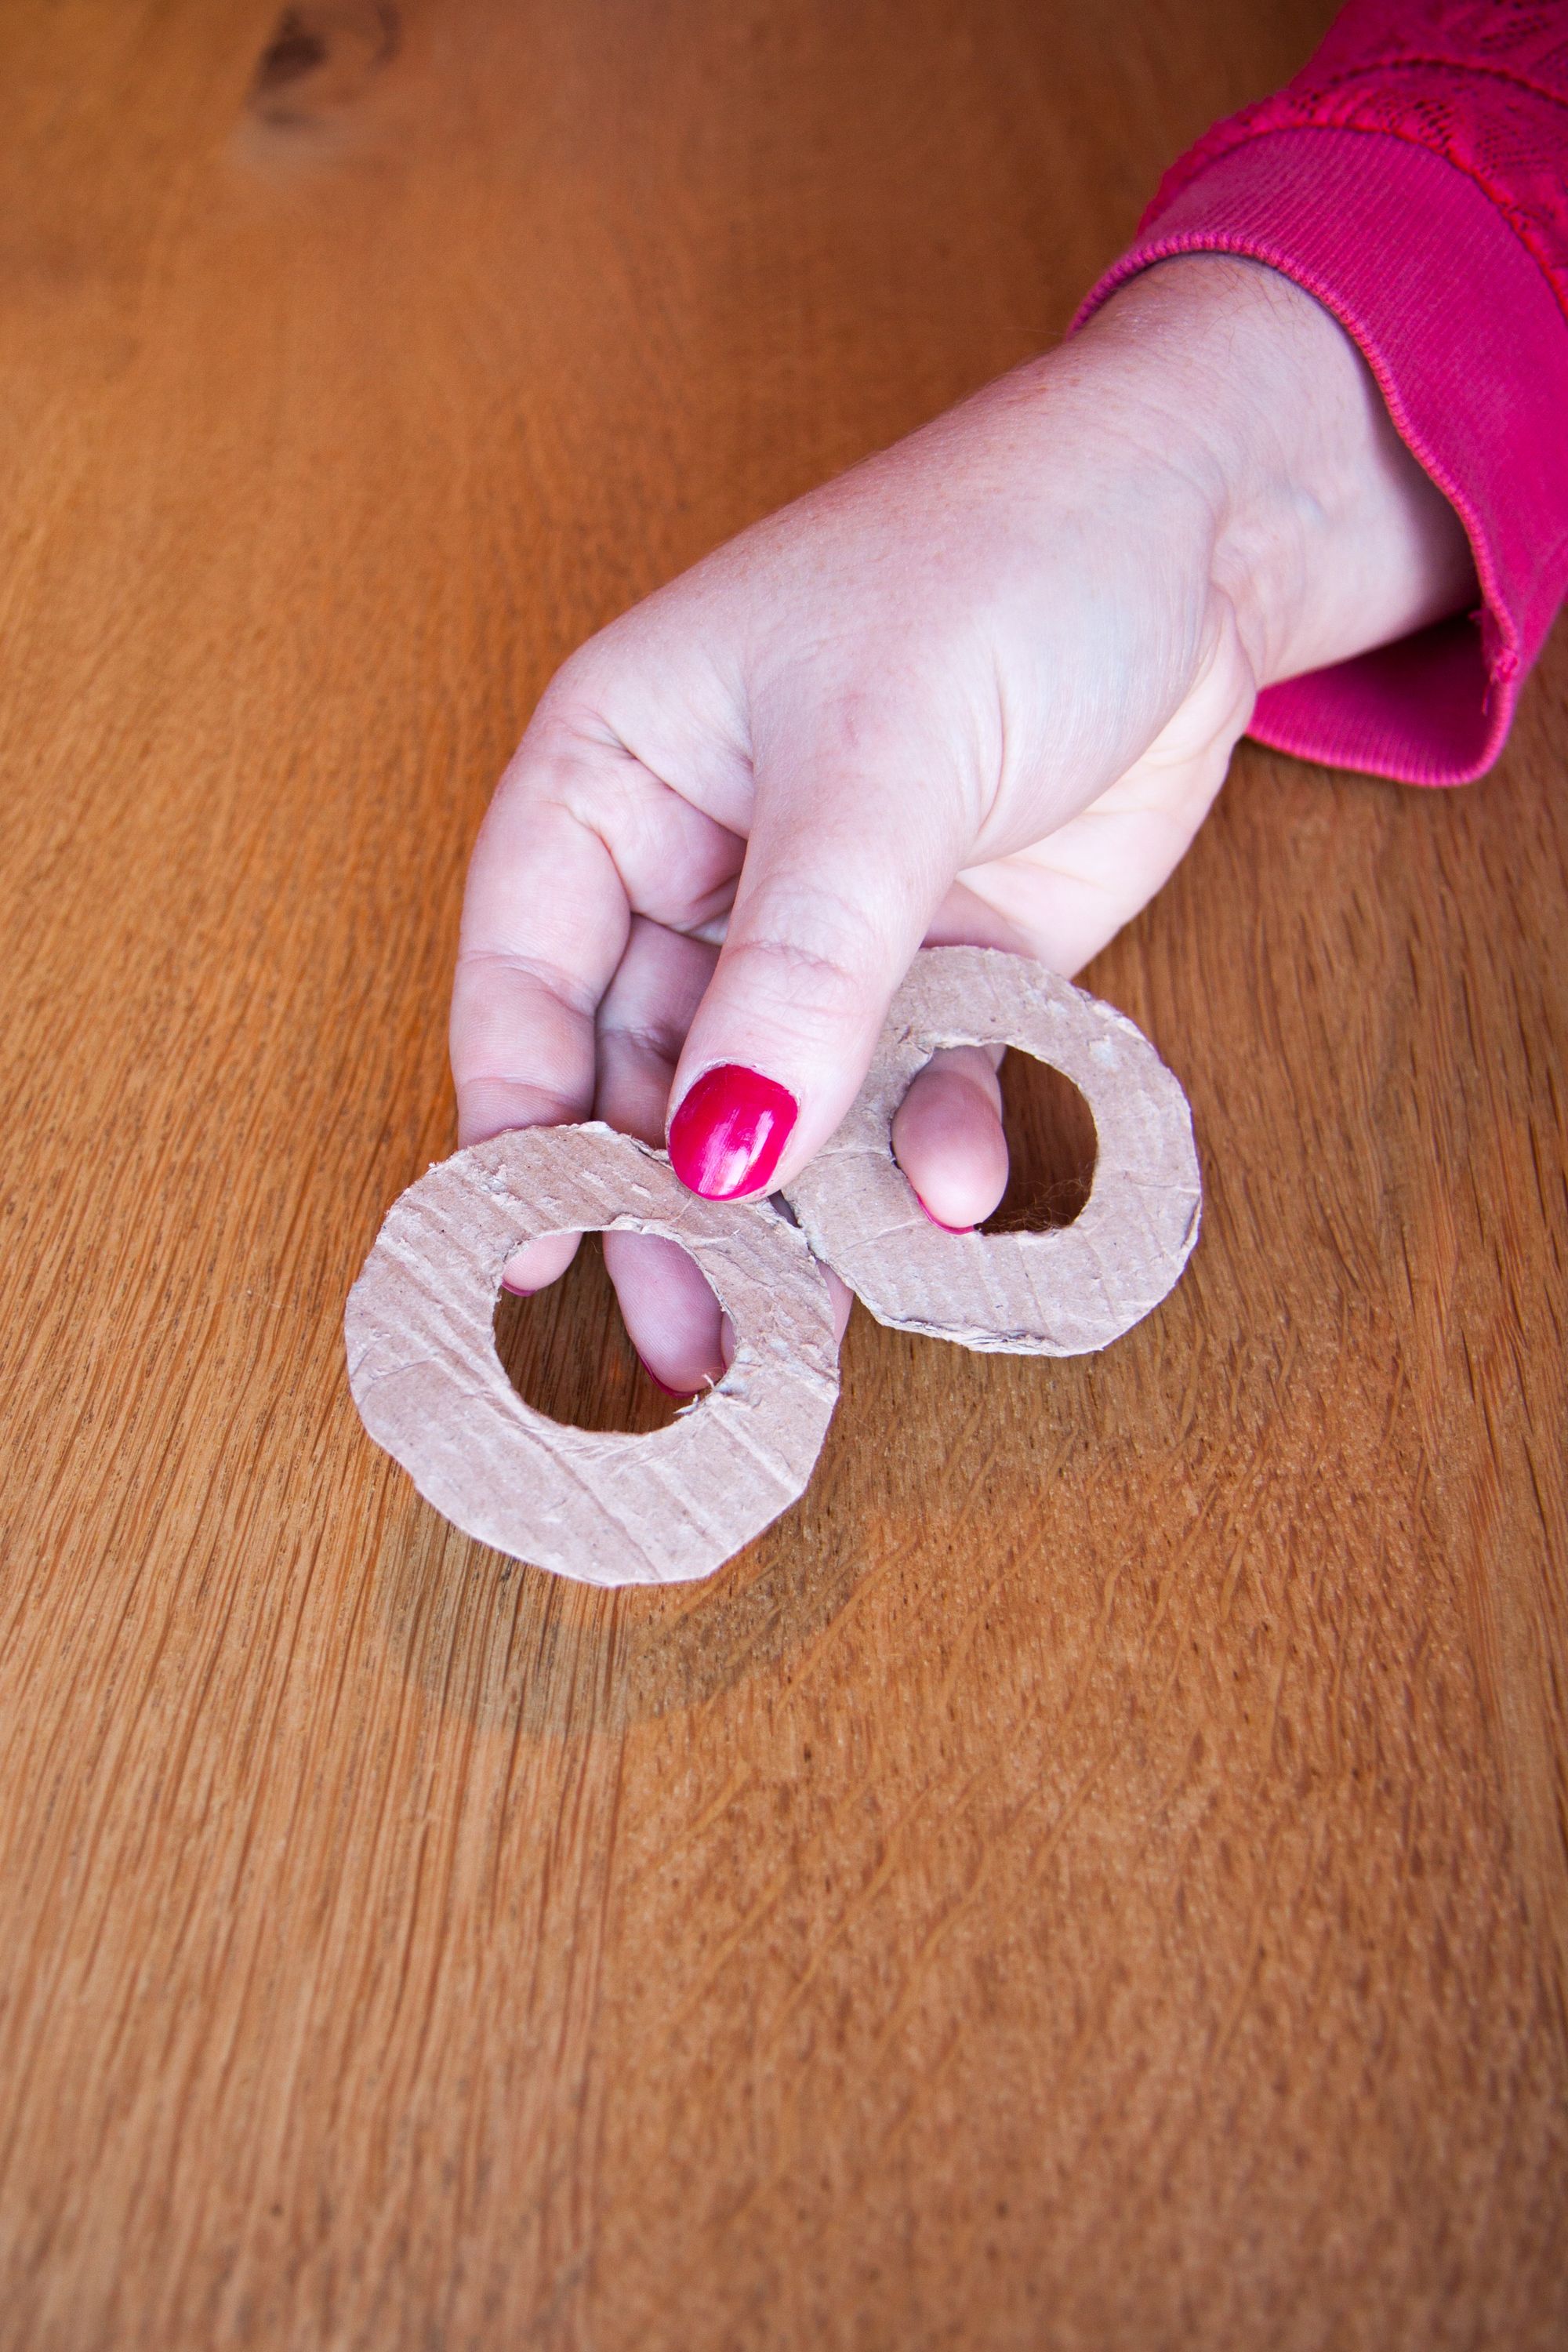 Roze nagellak, twee basisstukjes karton voor de pompons